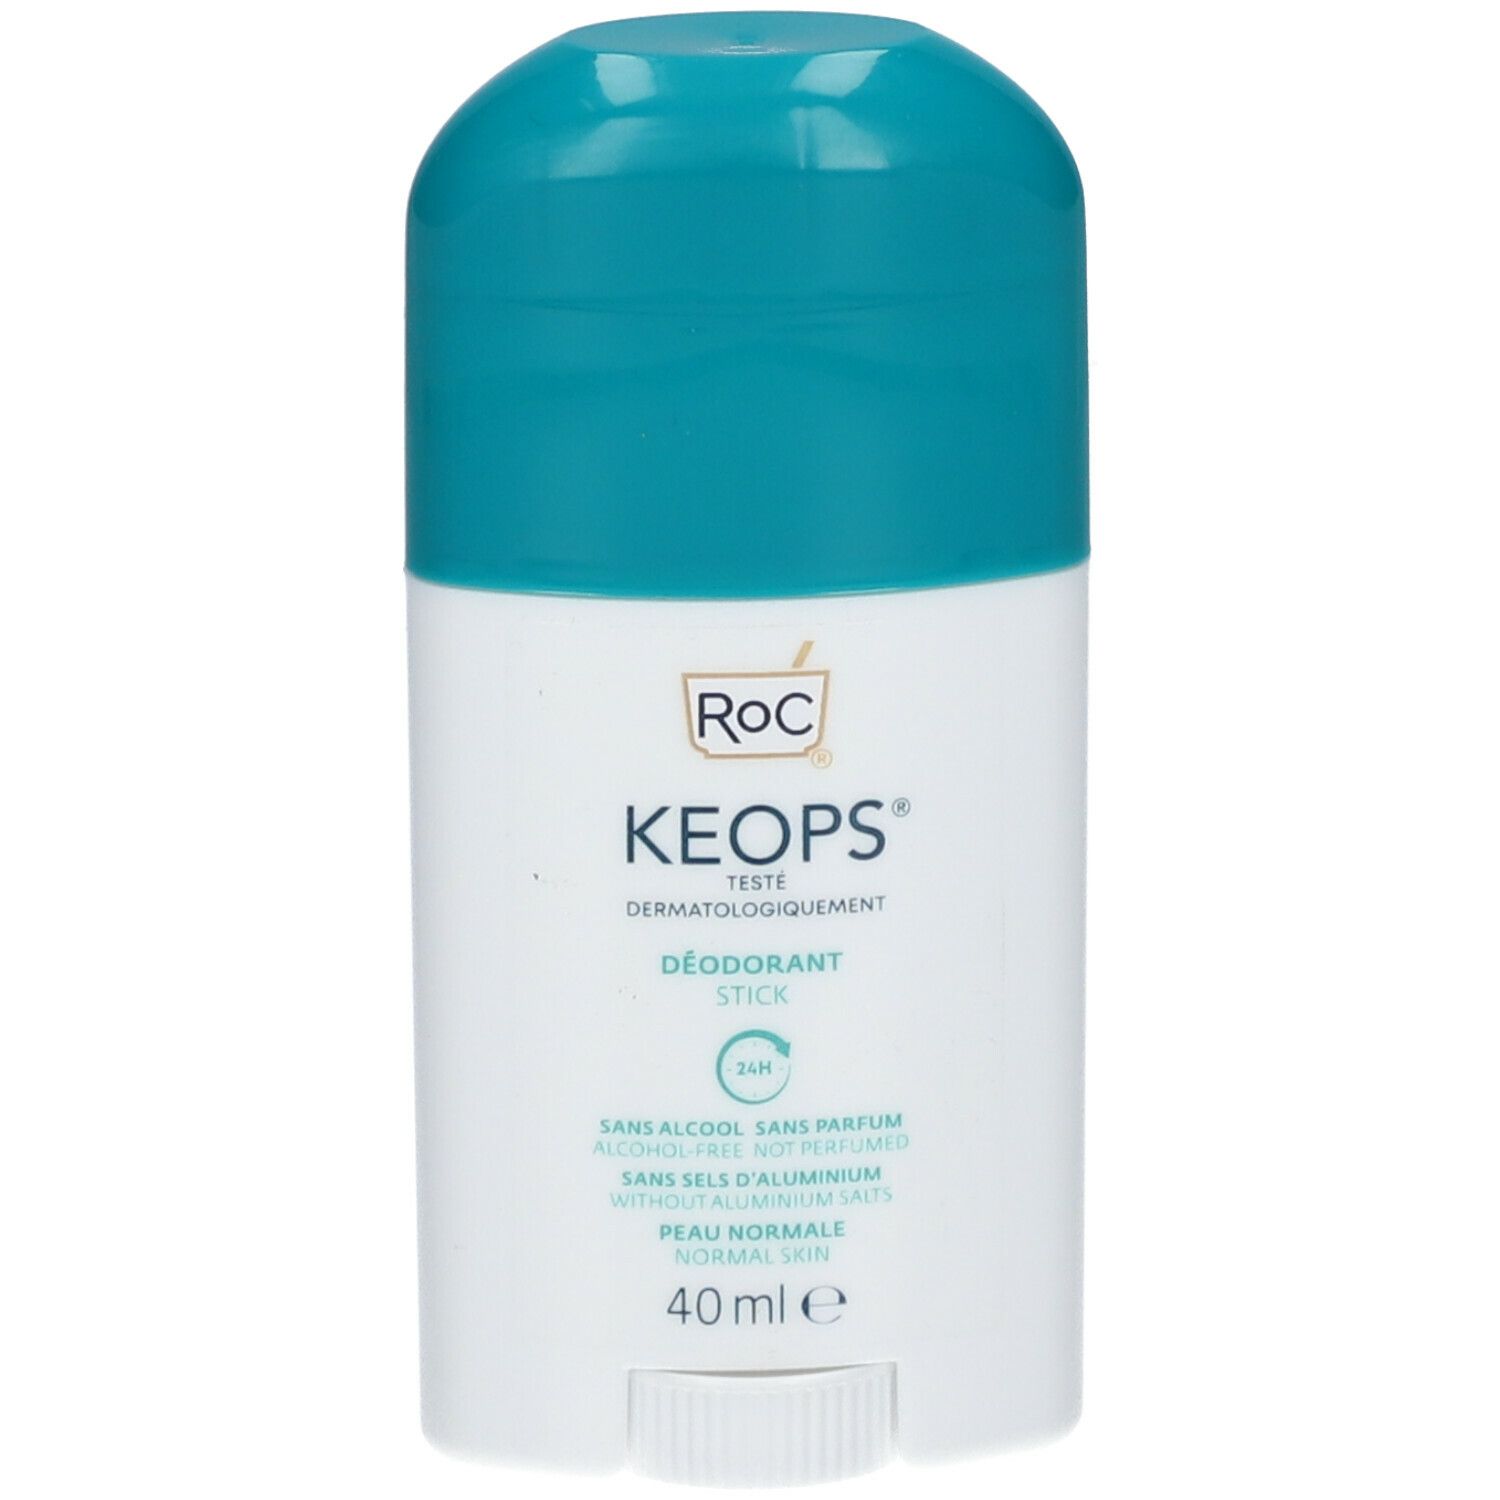 RoC® Keops Déodorant en stick 24h